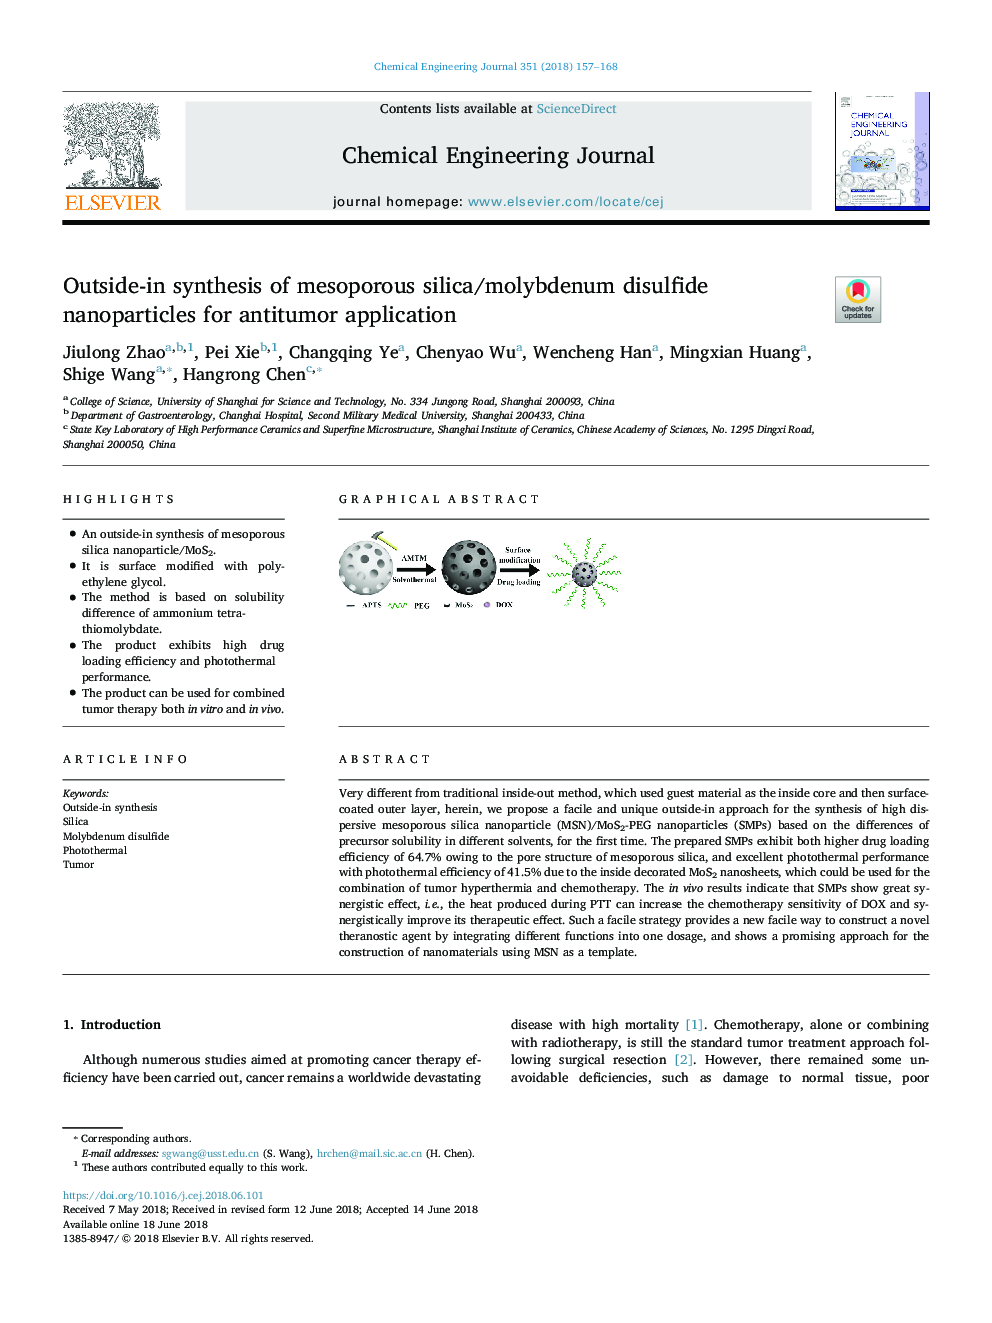 سنتز بیرونی نانو ذرات سیلیس مزوزوپور / مولیبدن دیسولفید برای کاربرد ضد تومور 